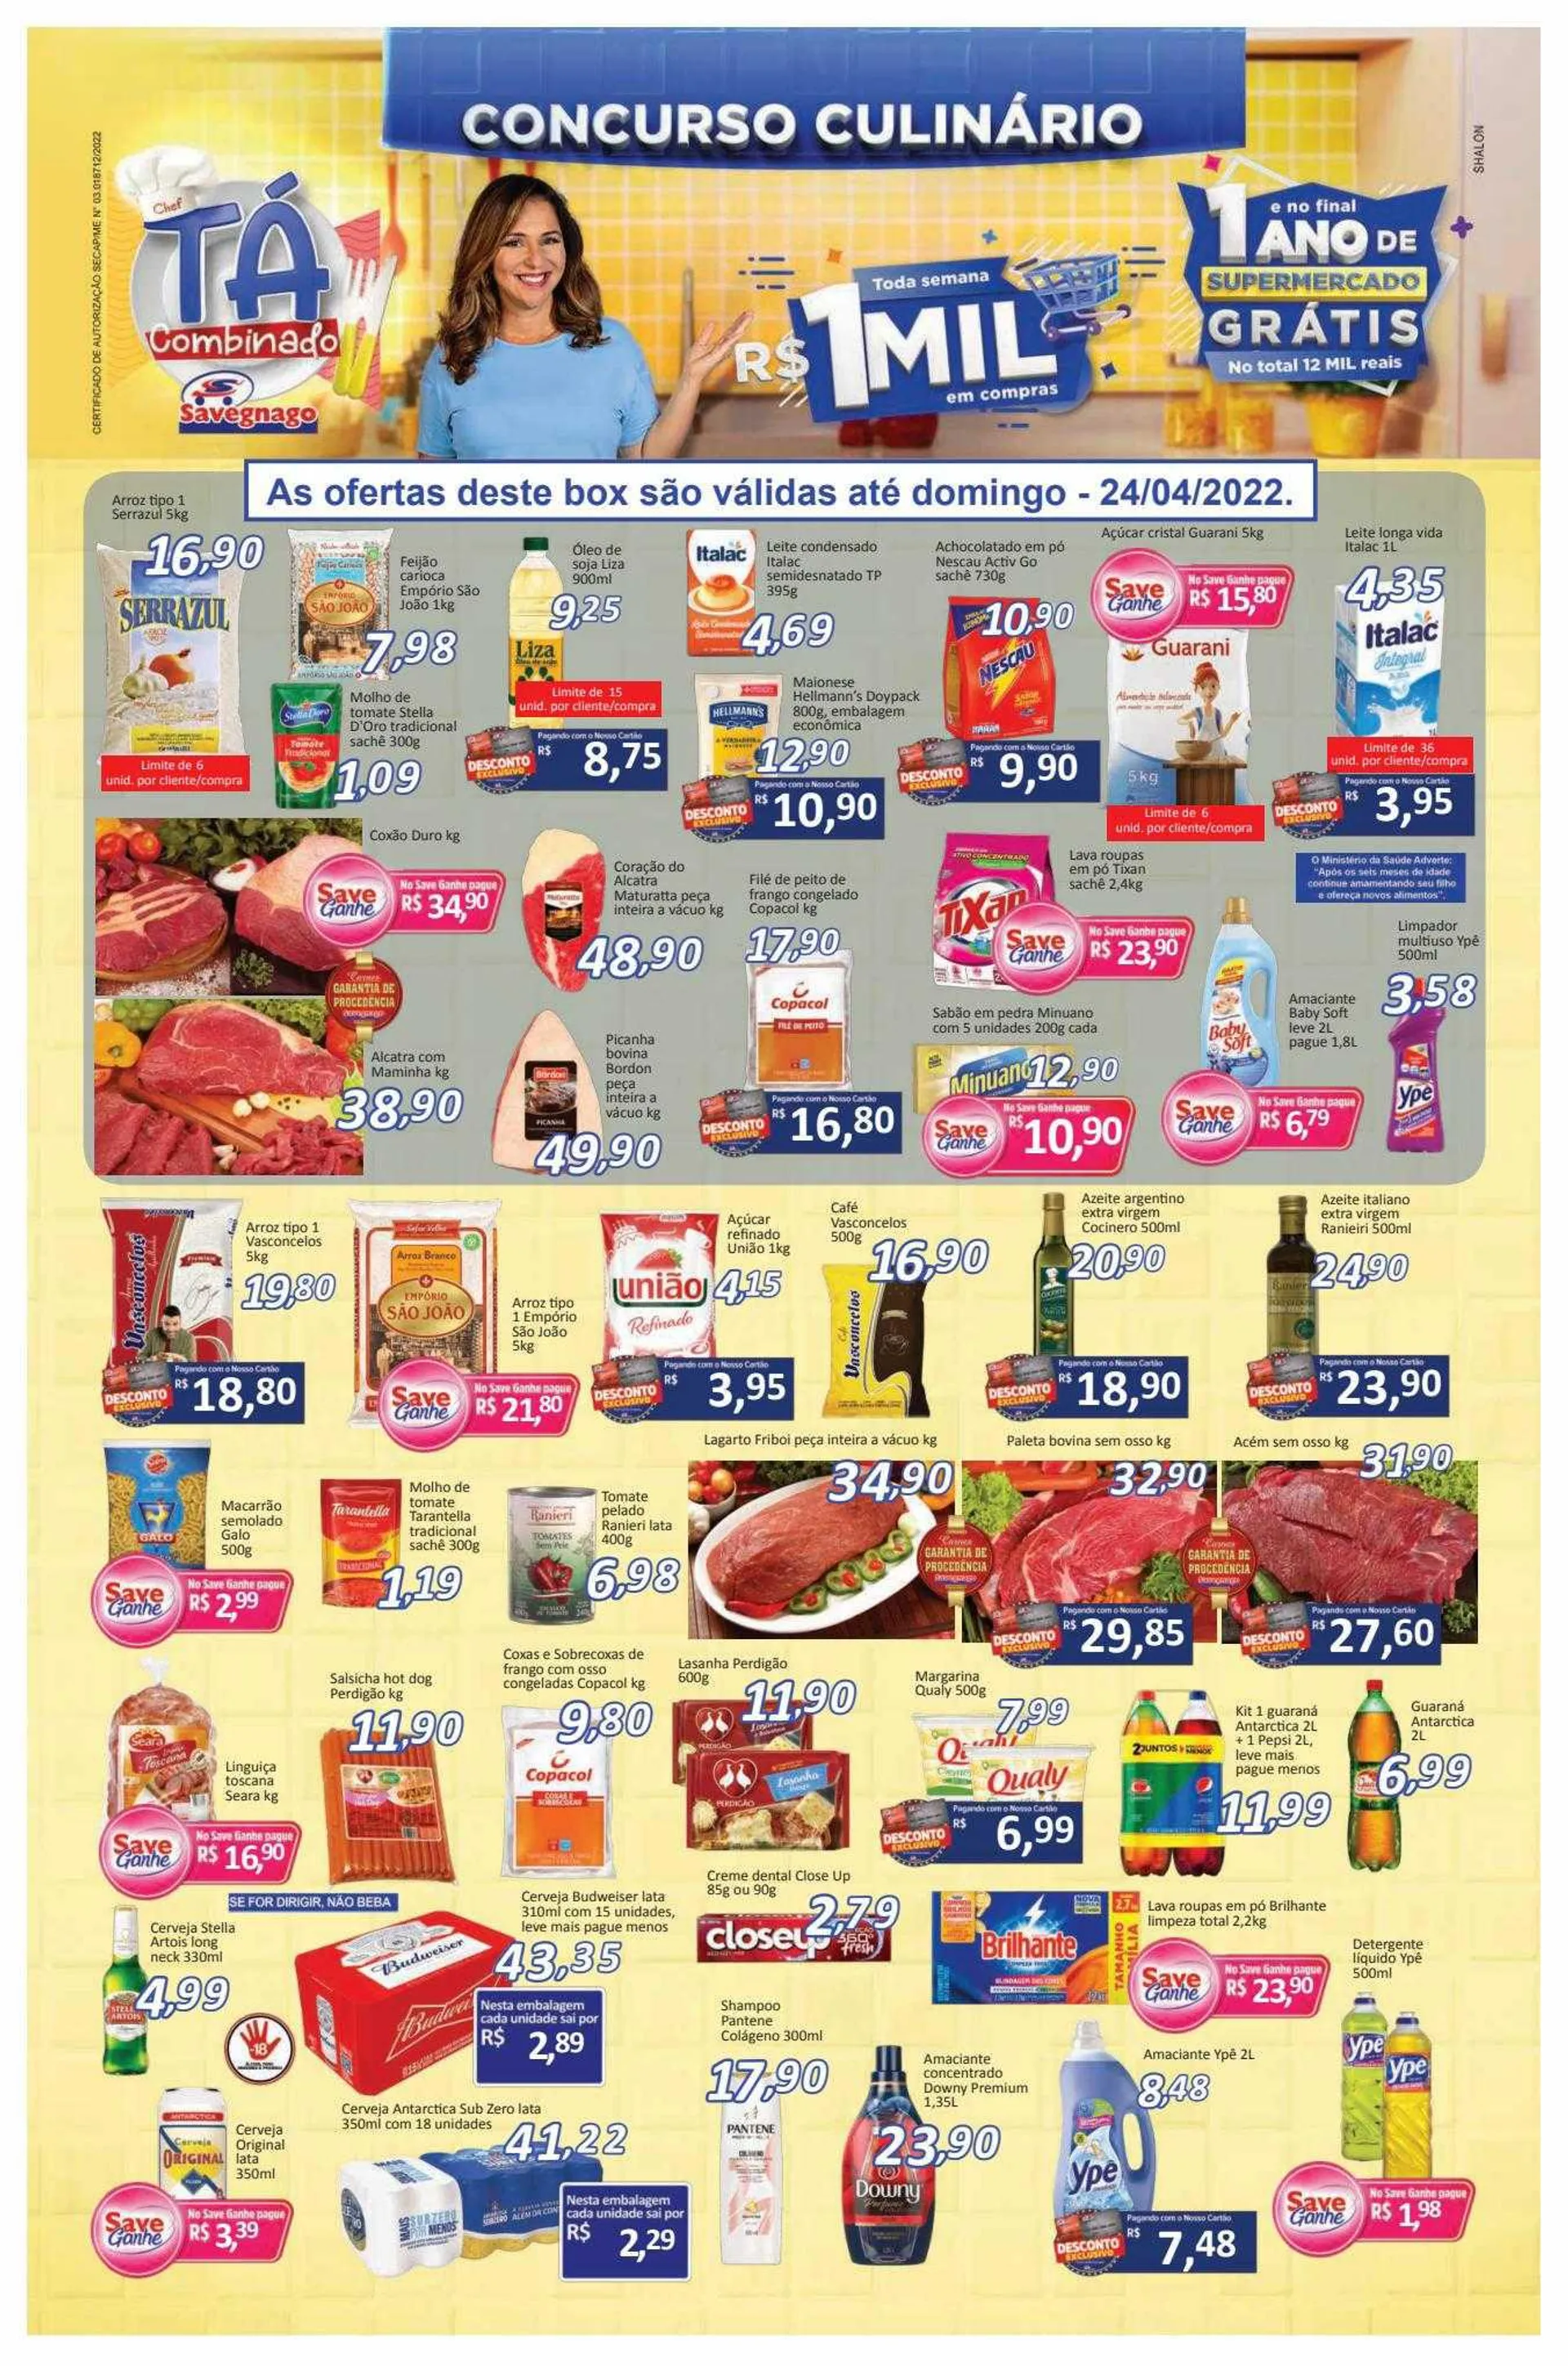 Encarte de Encarte Supermercados Savegnago 27 de junho até 29 de junho 2024 - Pagina 